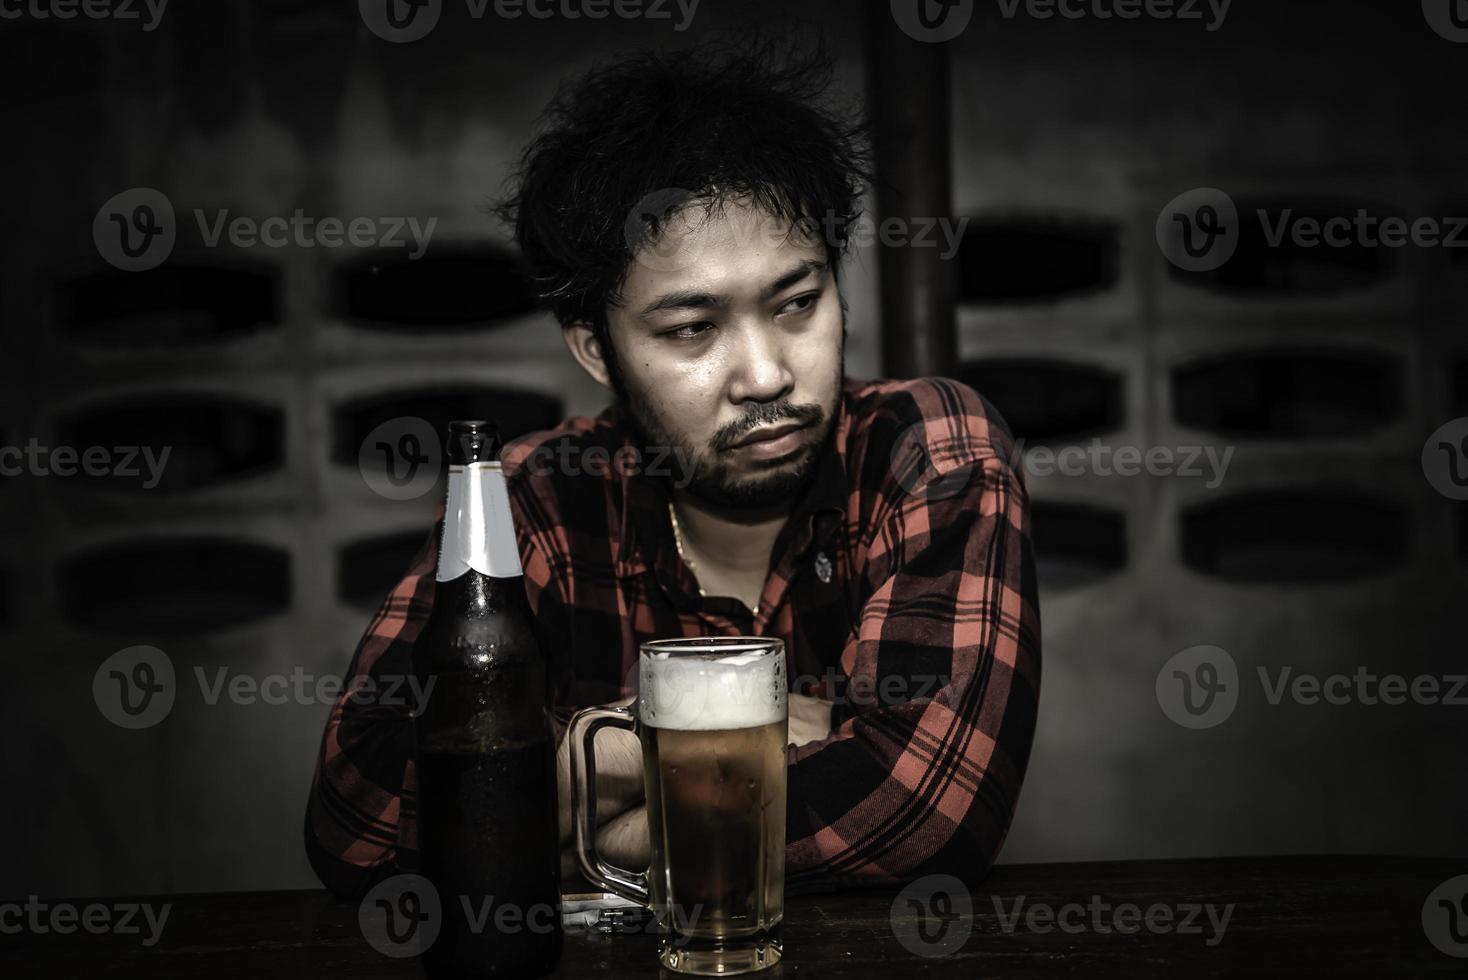 hombre asiático bebe vodka solo en casa por la noche, gente de tailandia, concepto de borracho de hombre estresado foto